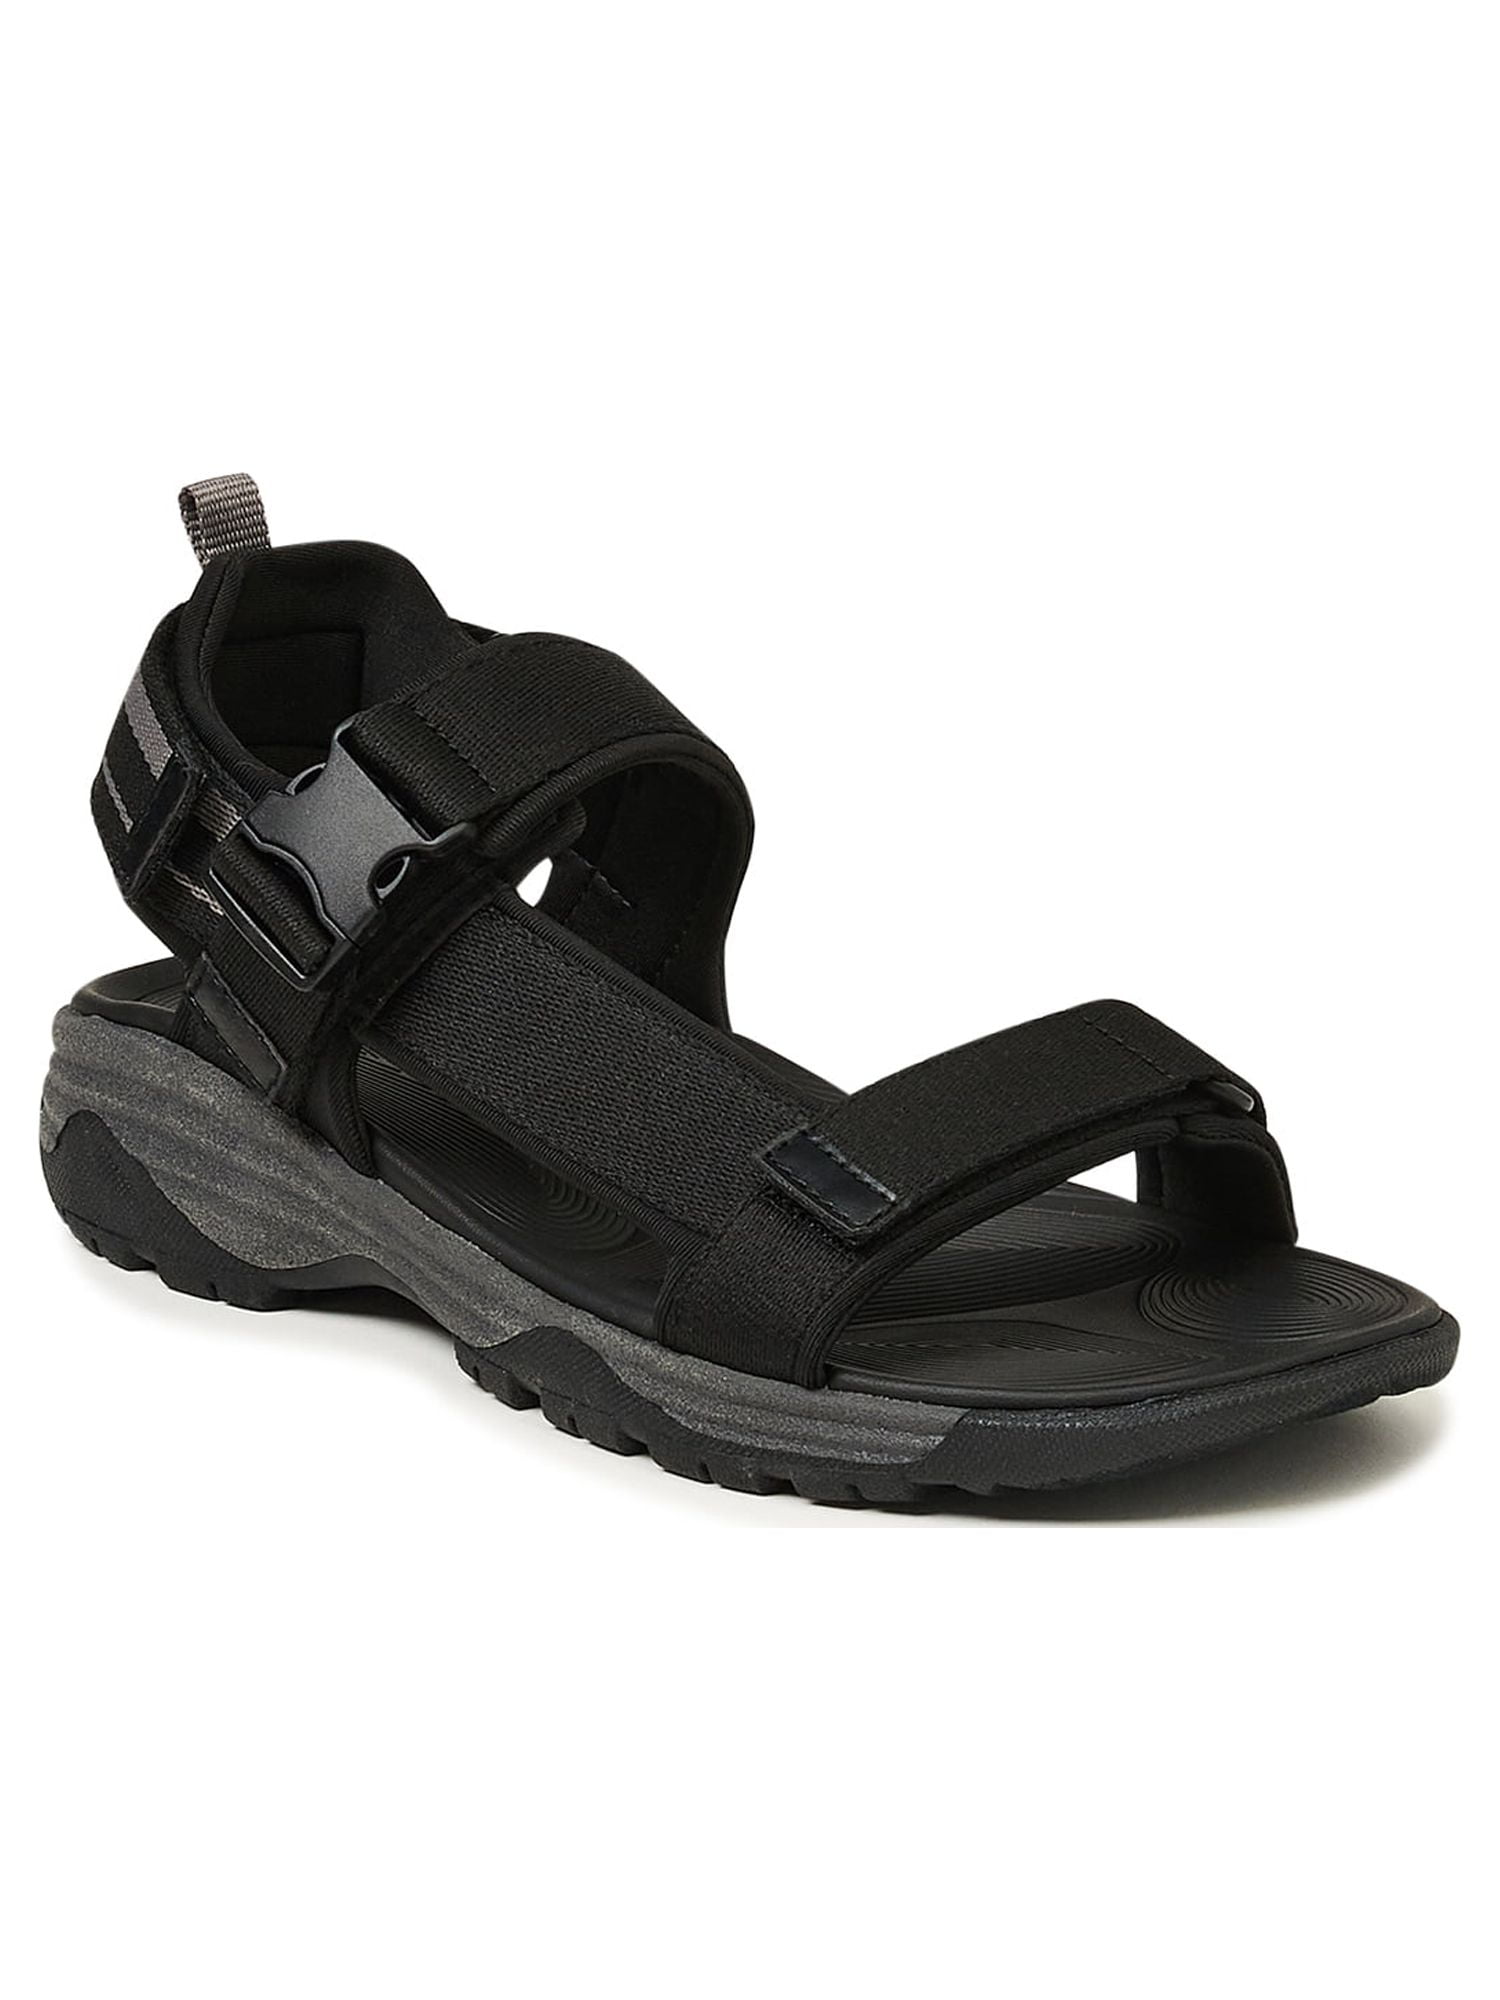 Men's Leather Closed-Back Sandals - Jerusalem Sandals